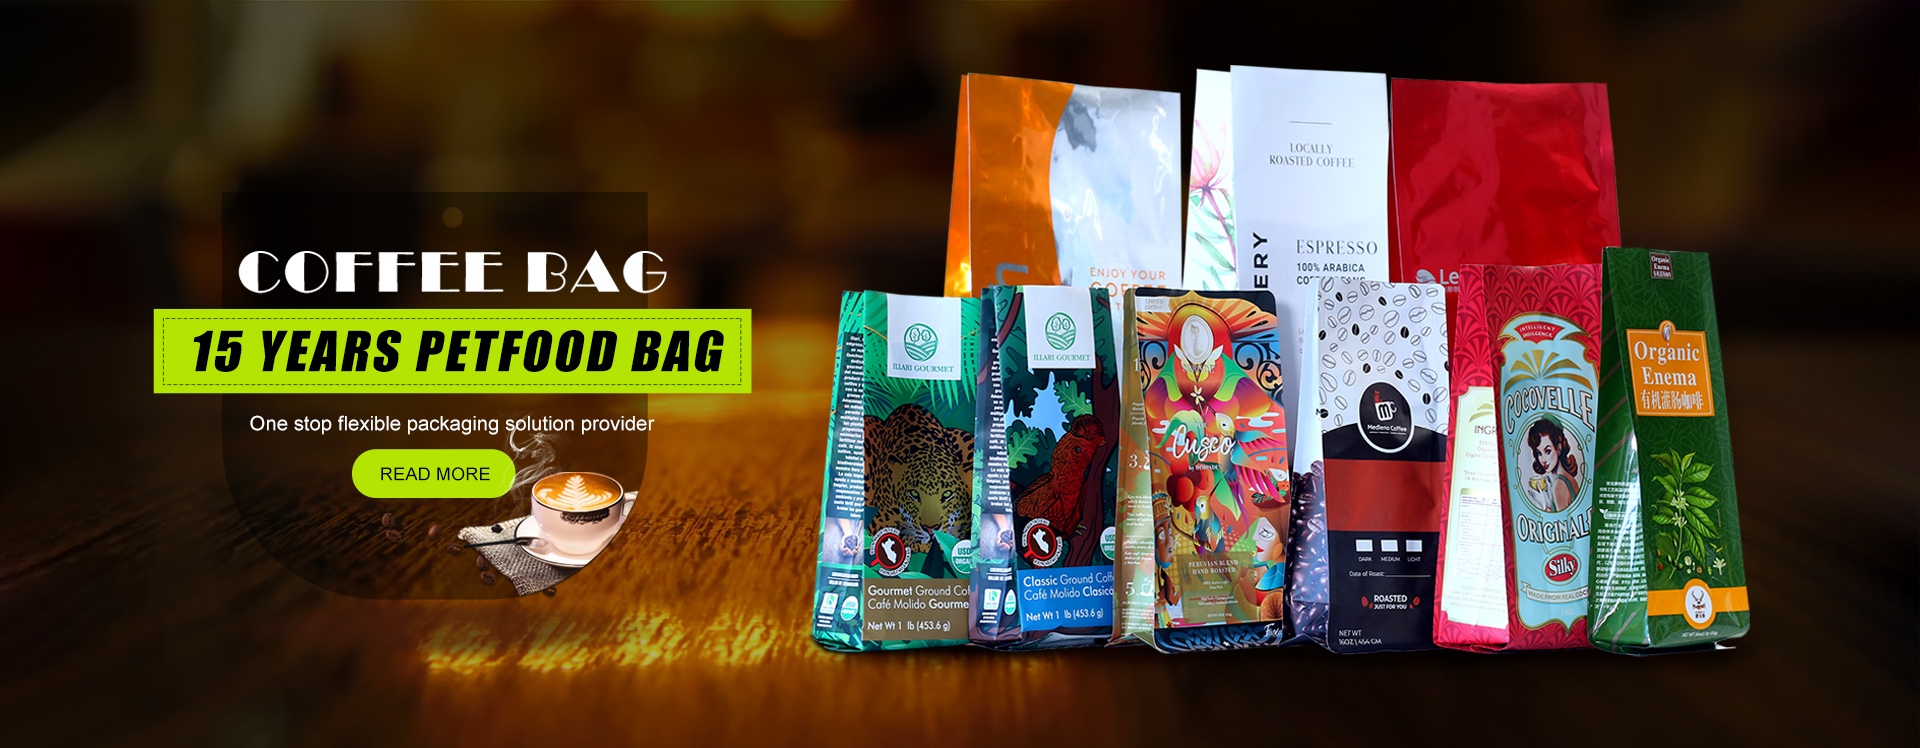 Minfly Packaging Bag Kawa Banner